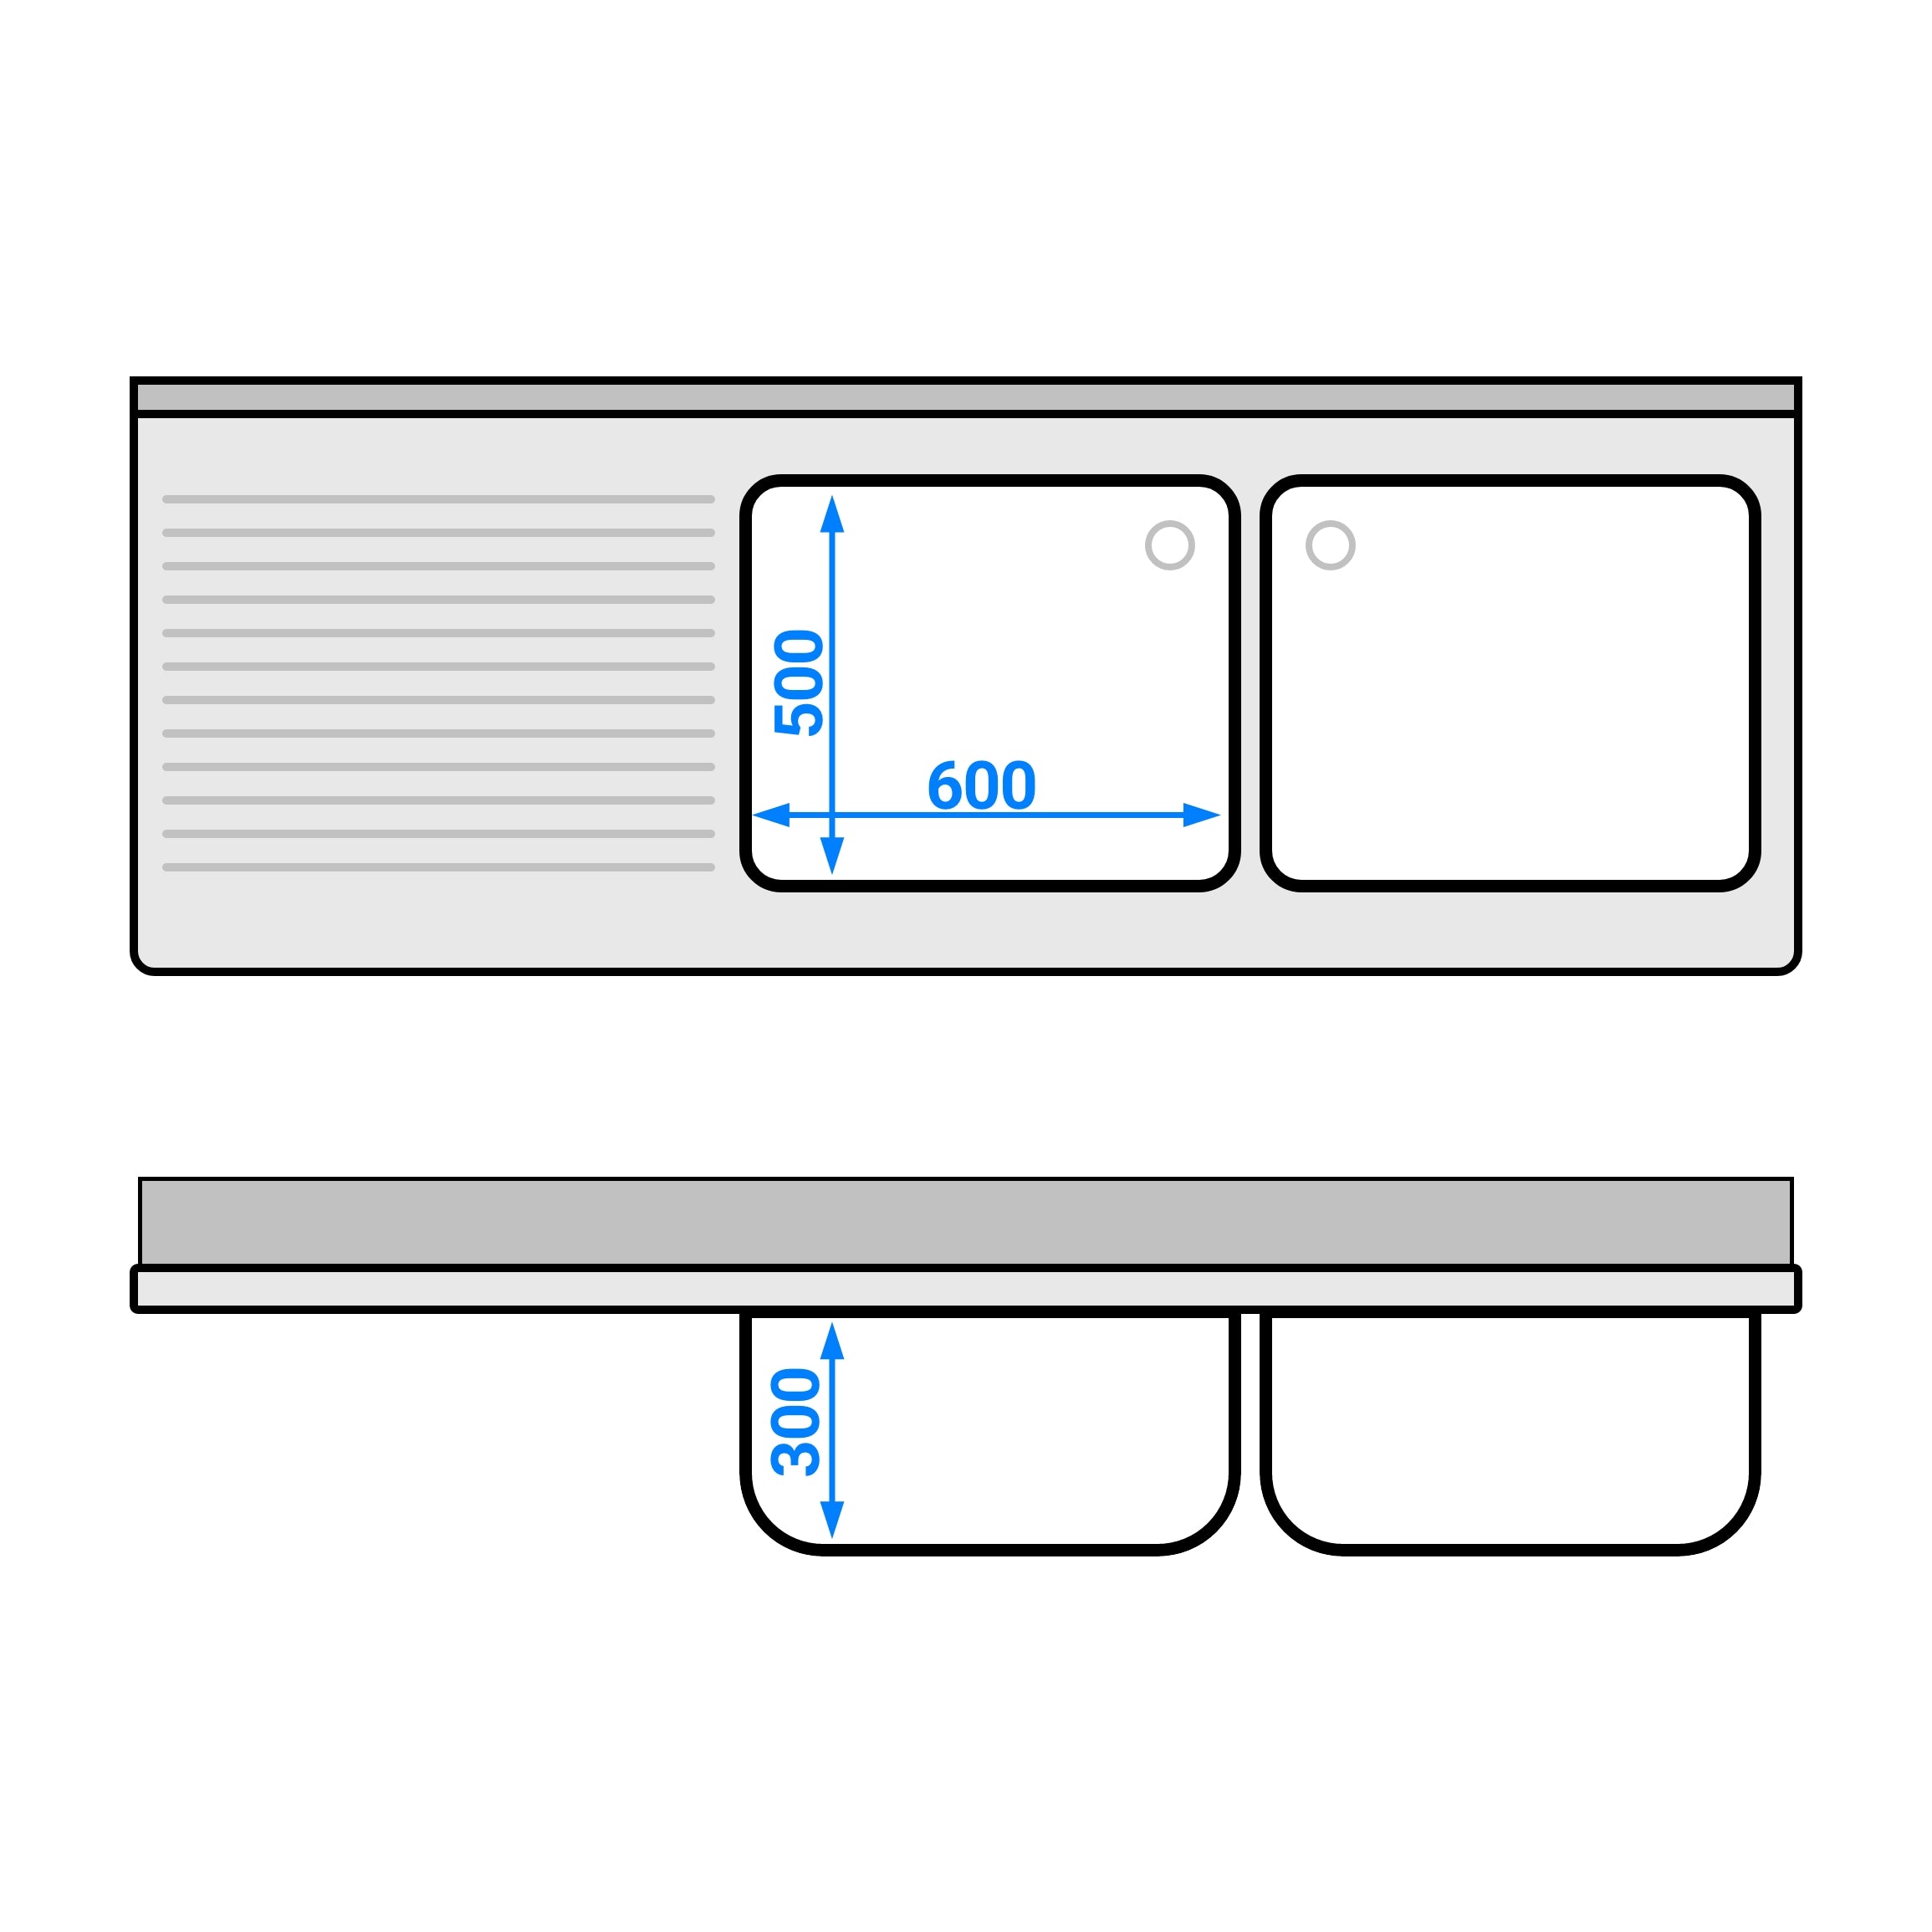 Vaskeskab med skraldespand - 2,0m - 2 vaske til højre - med bagkant og dobbelte døre